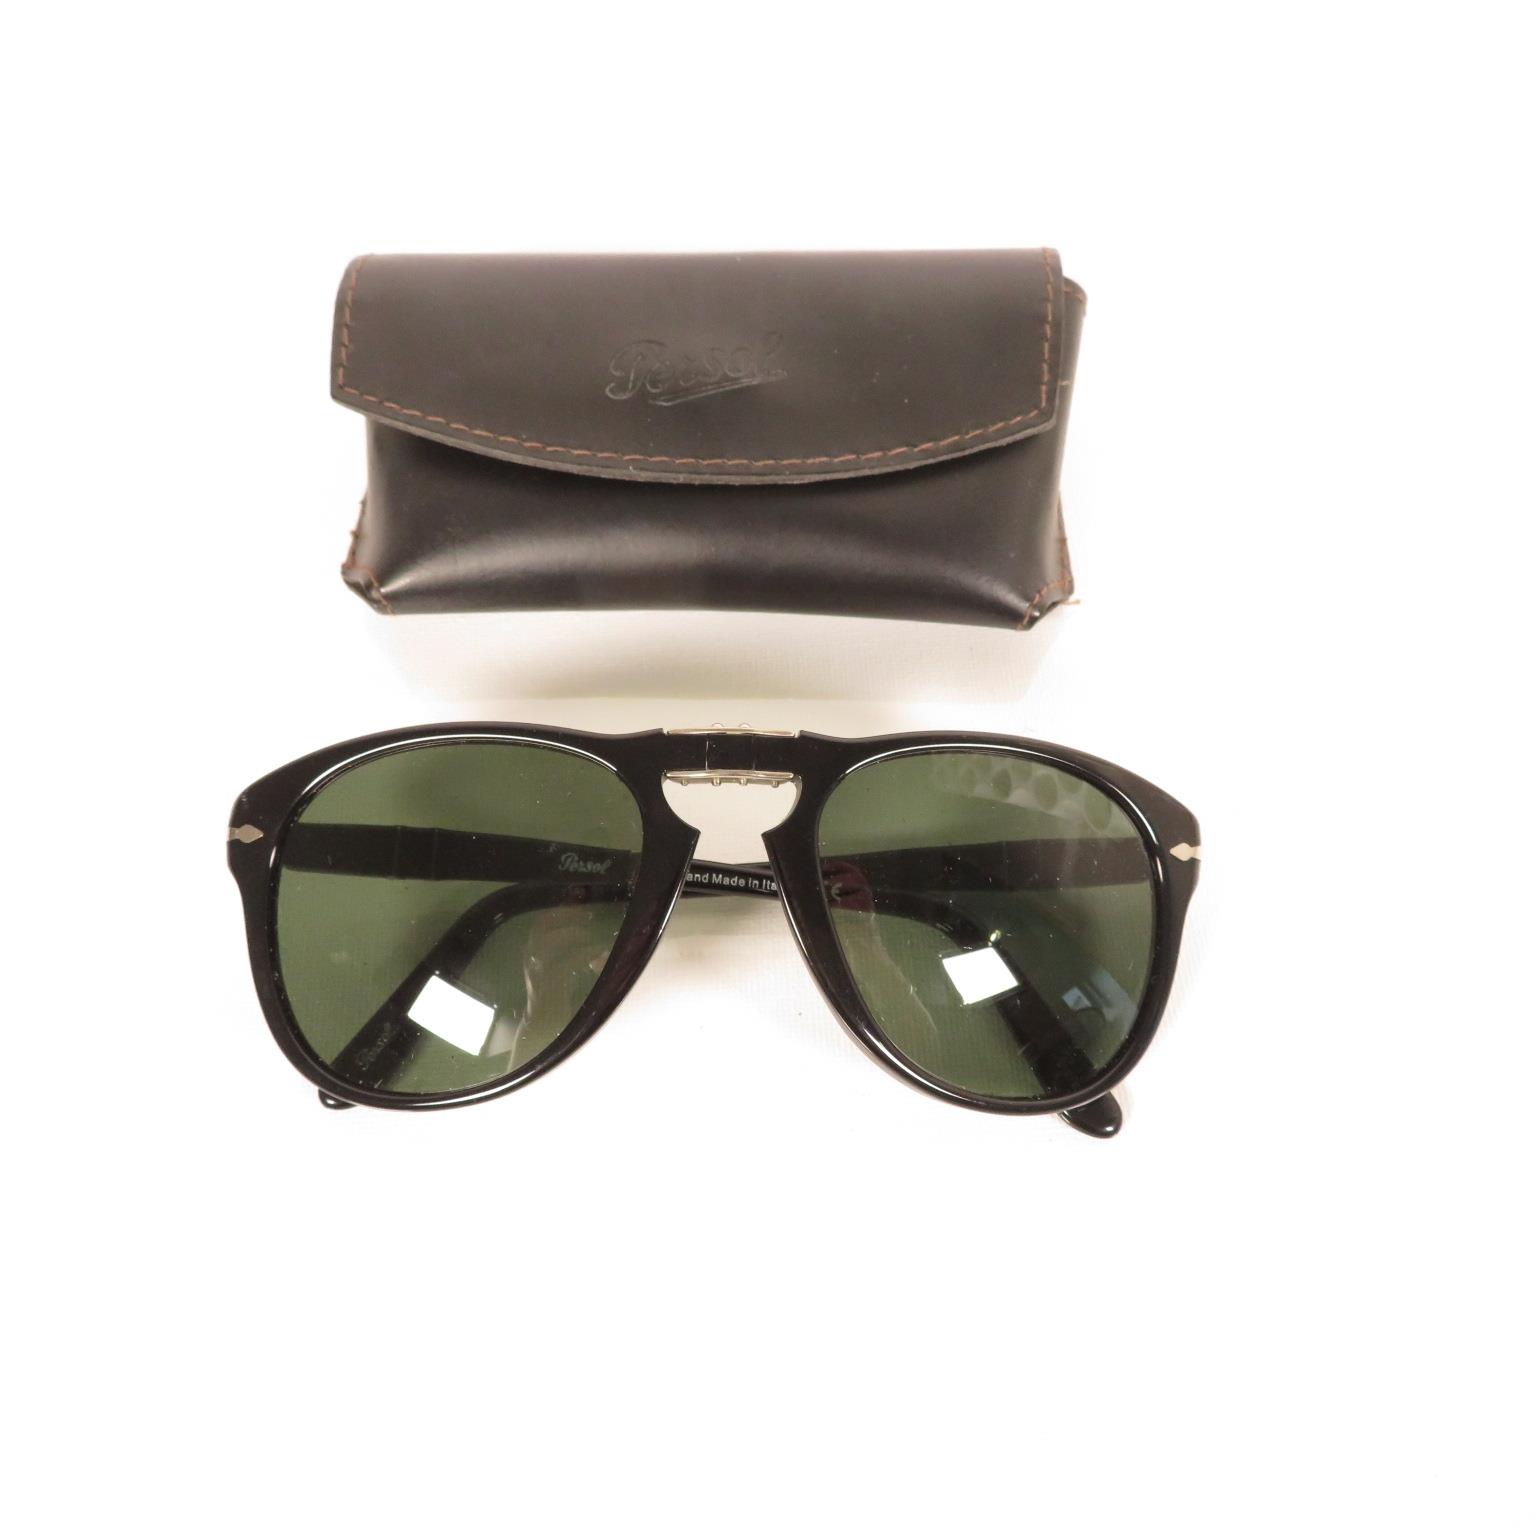 Pair of Porsche Folding Sunglasses, Per Sol folding Sunglasses, Oakley sunglasses and Porsche design - Bild 6 aus 17